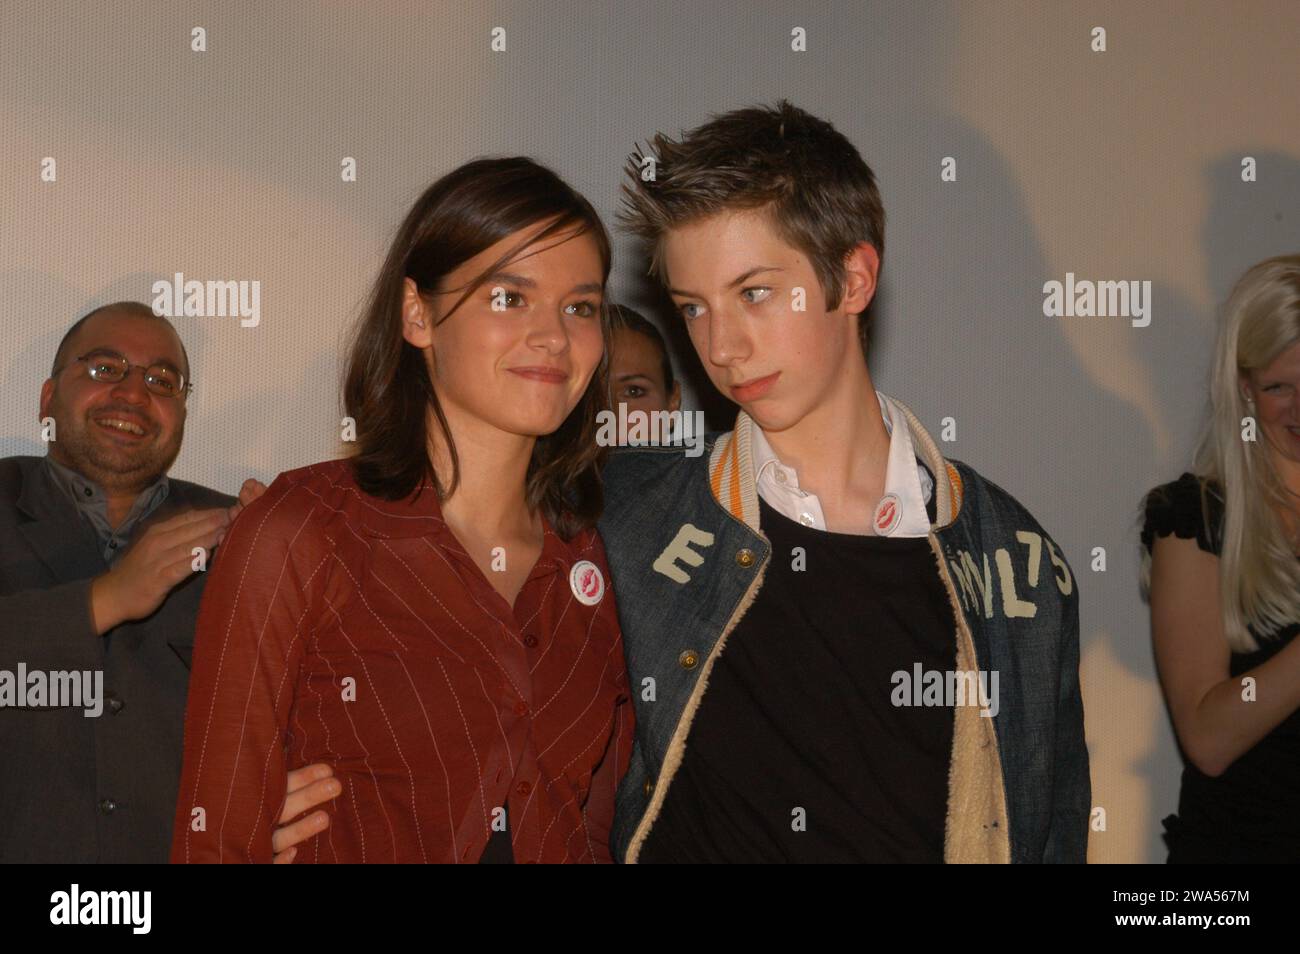 Premierenfeier Filmpremiere vom deutschen Jugendfilm aus 2002 'Das Jahr der ersten Küsse', Deutschland 2002 mit dabei: Diane Siemons-Willems, Max Mauff Foto Stock